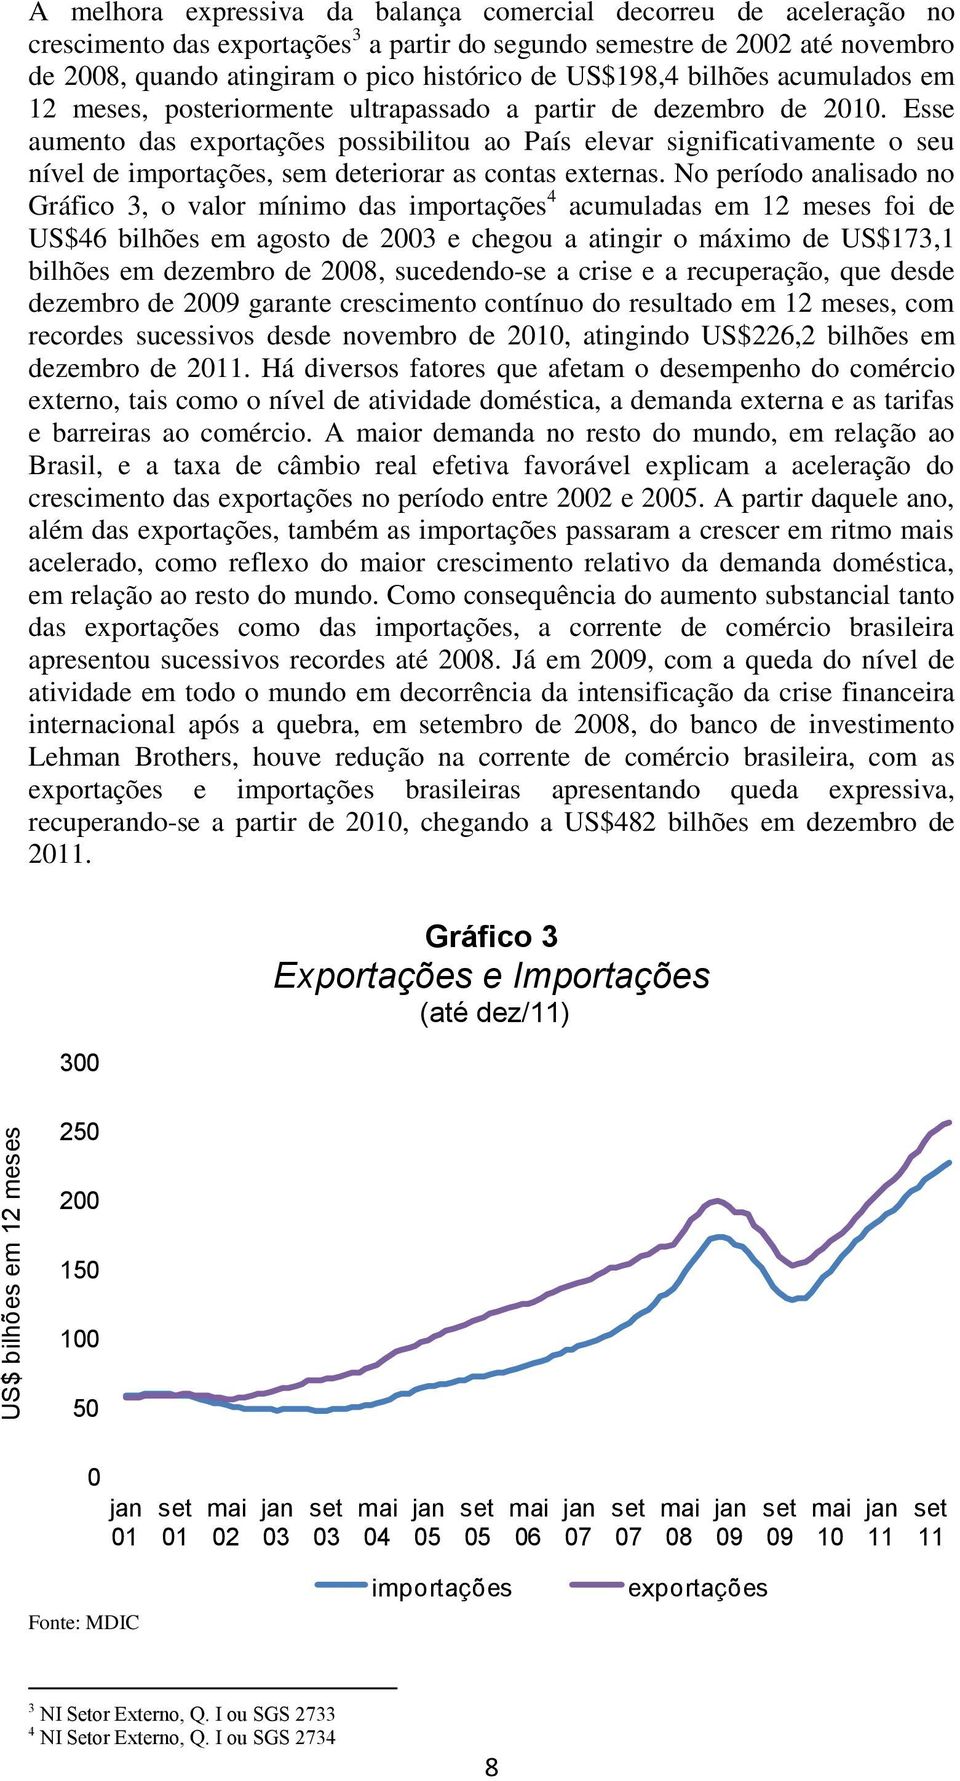 Esse aumento das exportações possibilitou ao País elevar significativamente o seu nível de importações, sem deteriorar as contas externas.